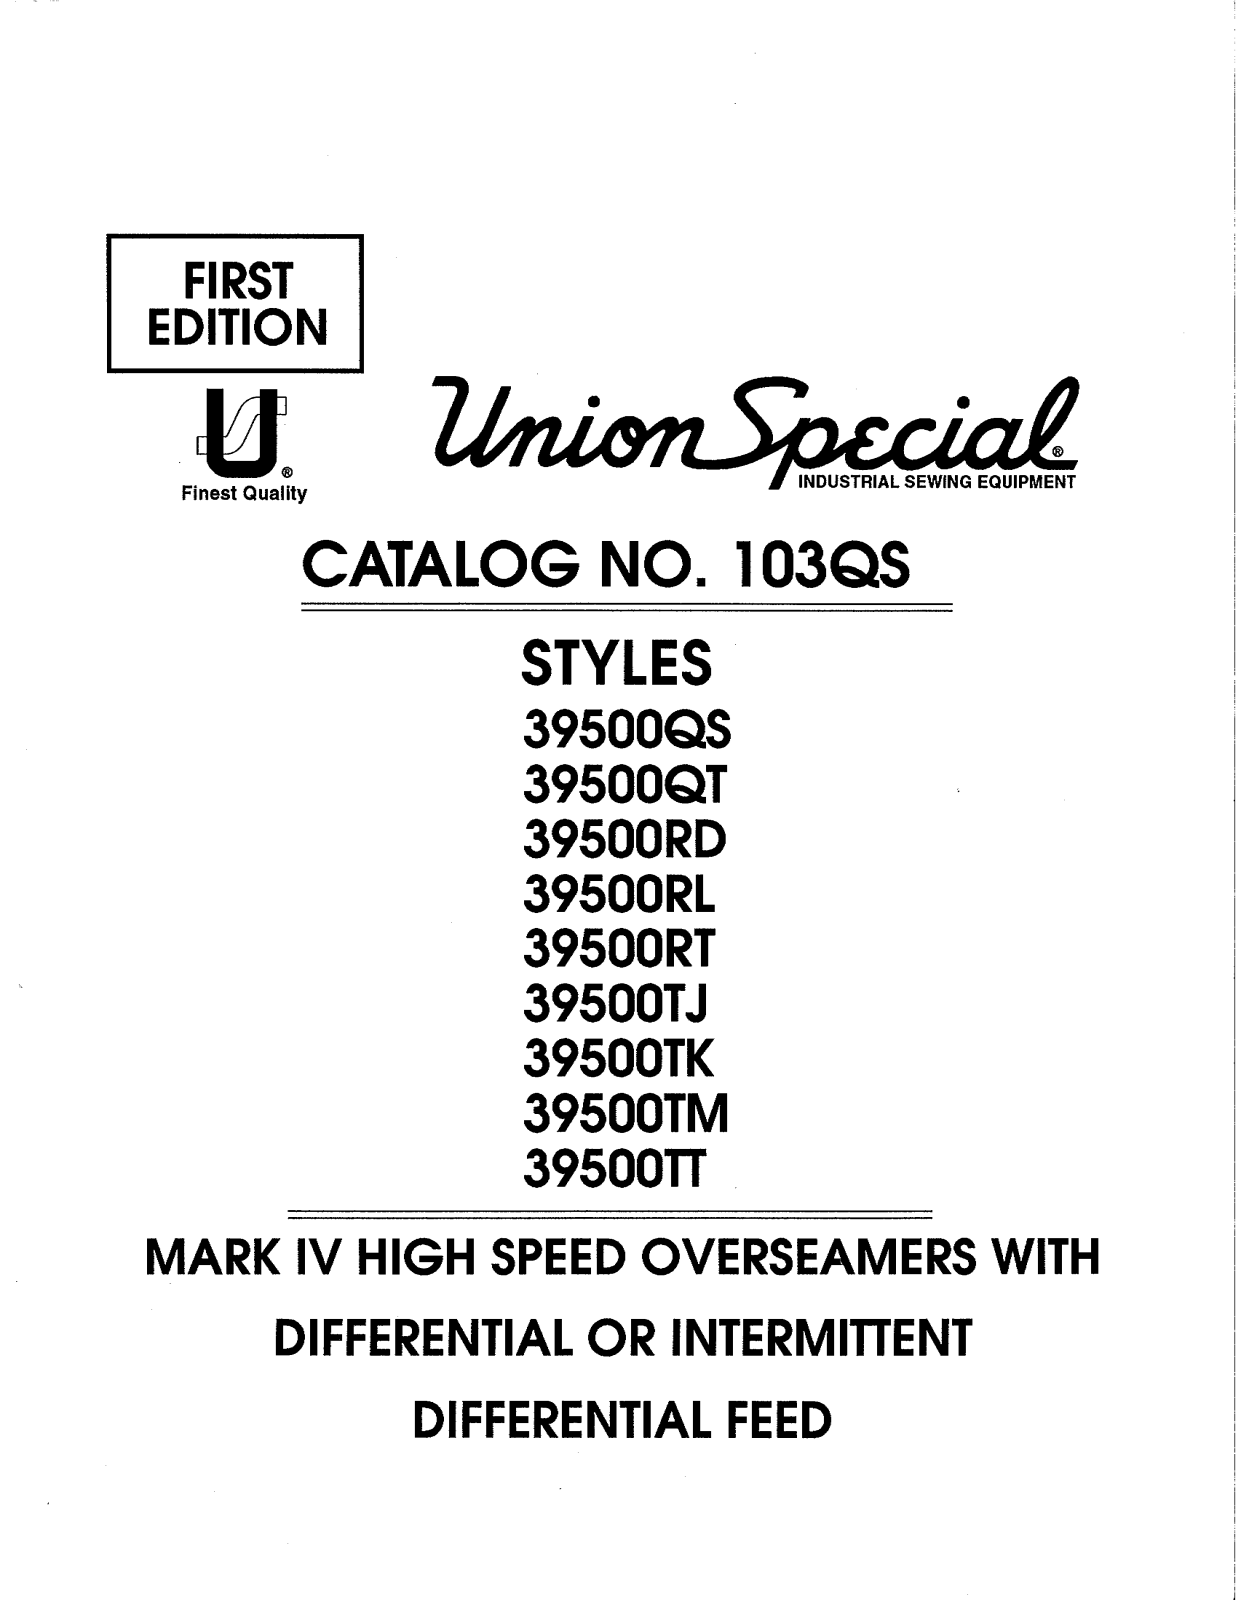 Union Special 39500QS, 39500QT, 39500RD Parts List